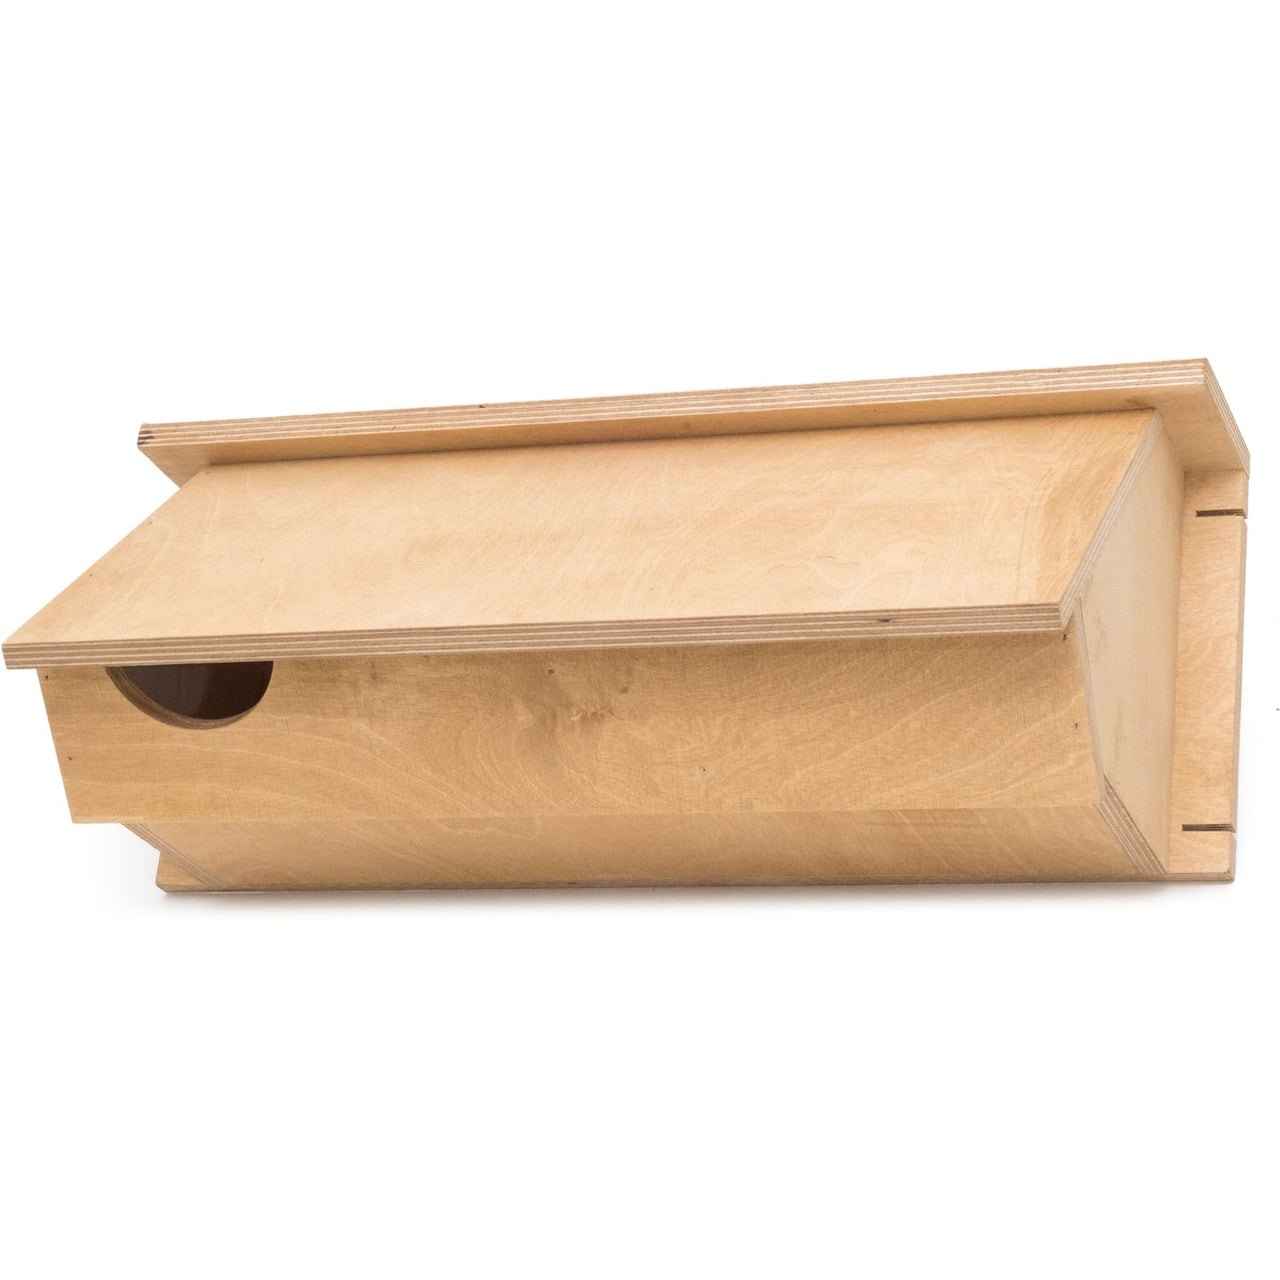 CJ Wildlife - Plywood Swift Box